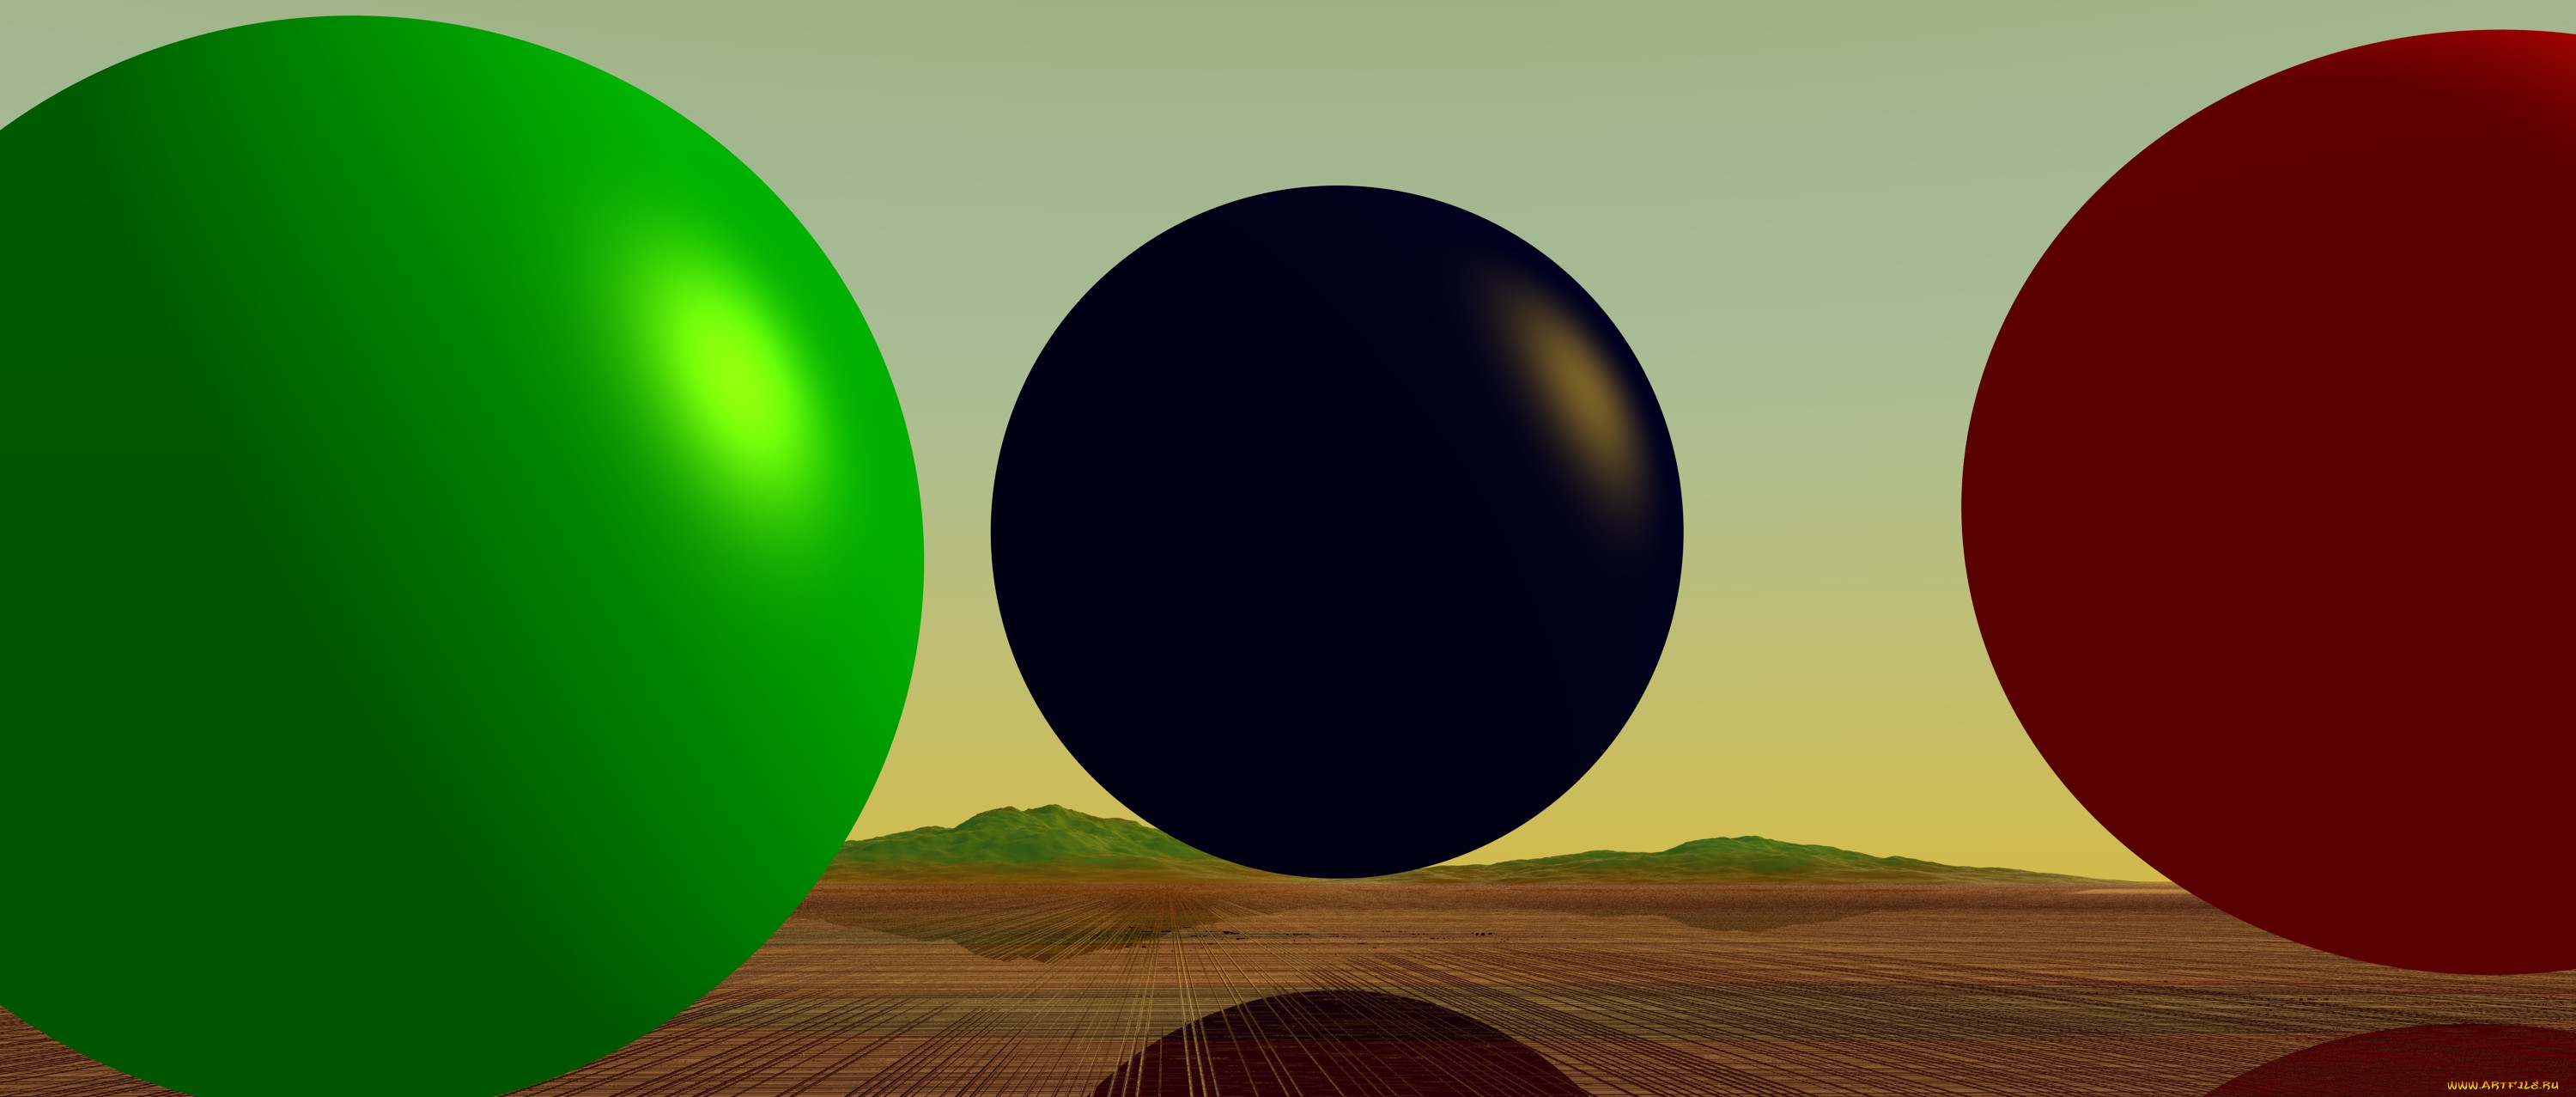 Шар Графика. Шар 3д рисунок. Фон шар геометрия. Моделирование поверхности земли возьмите небольшой шар или мяч.